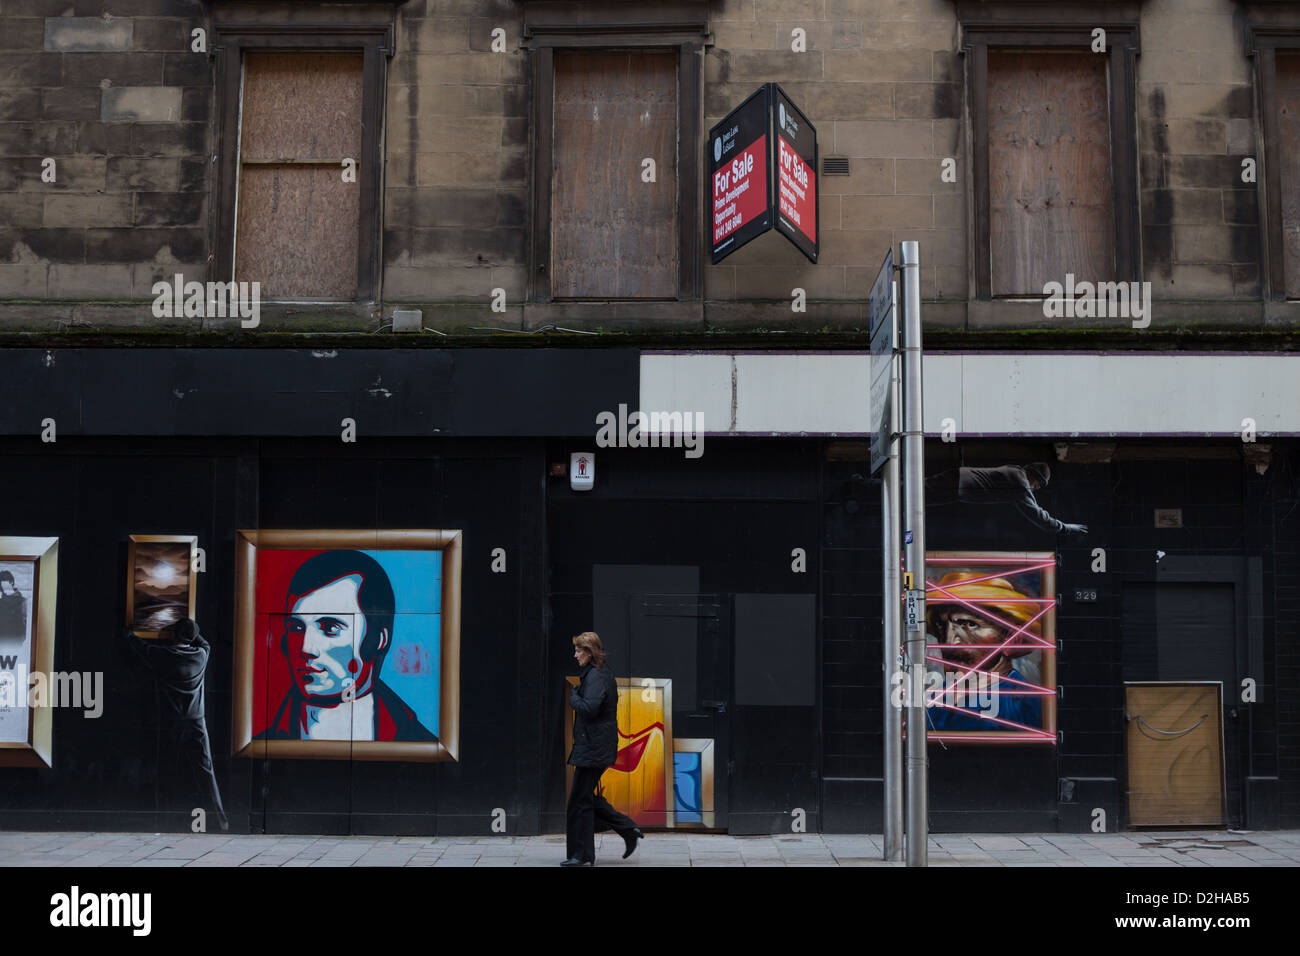 Poète écossais Robert Burns, représentés dans des peintures dans les rues de Glasgow, Ecosse. Banque D'Images